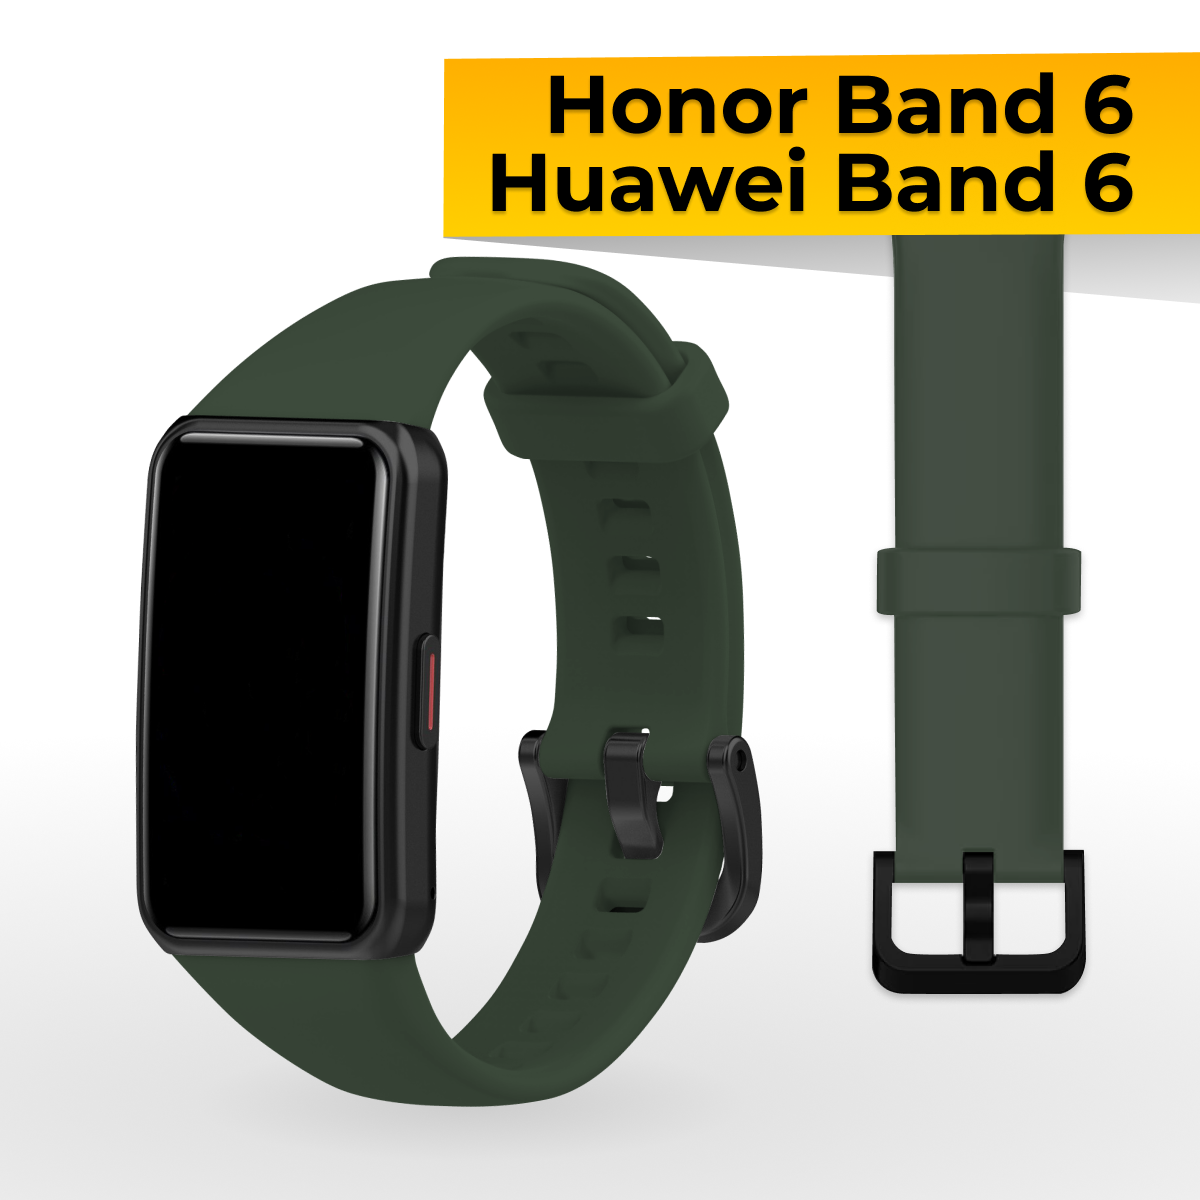 Силиконовый ремешок с застежкой для Honor Band 6 и Huawei Band 6 / Спортивный сменный браслет на часы Хонор Бэнд 6 и Хуавей Бэнд 6 / Темно-синий